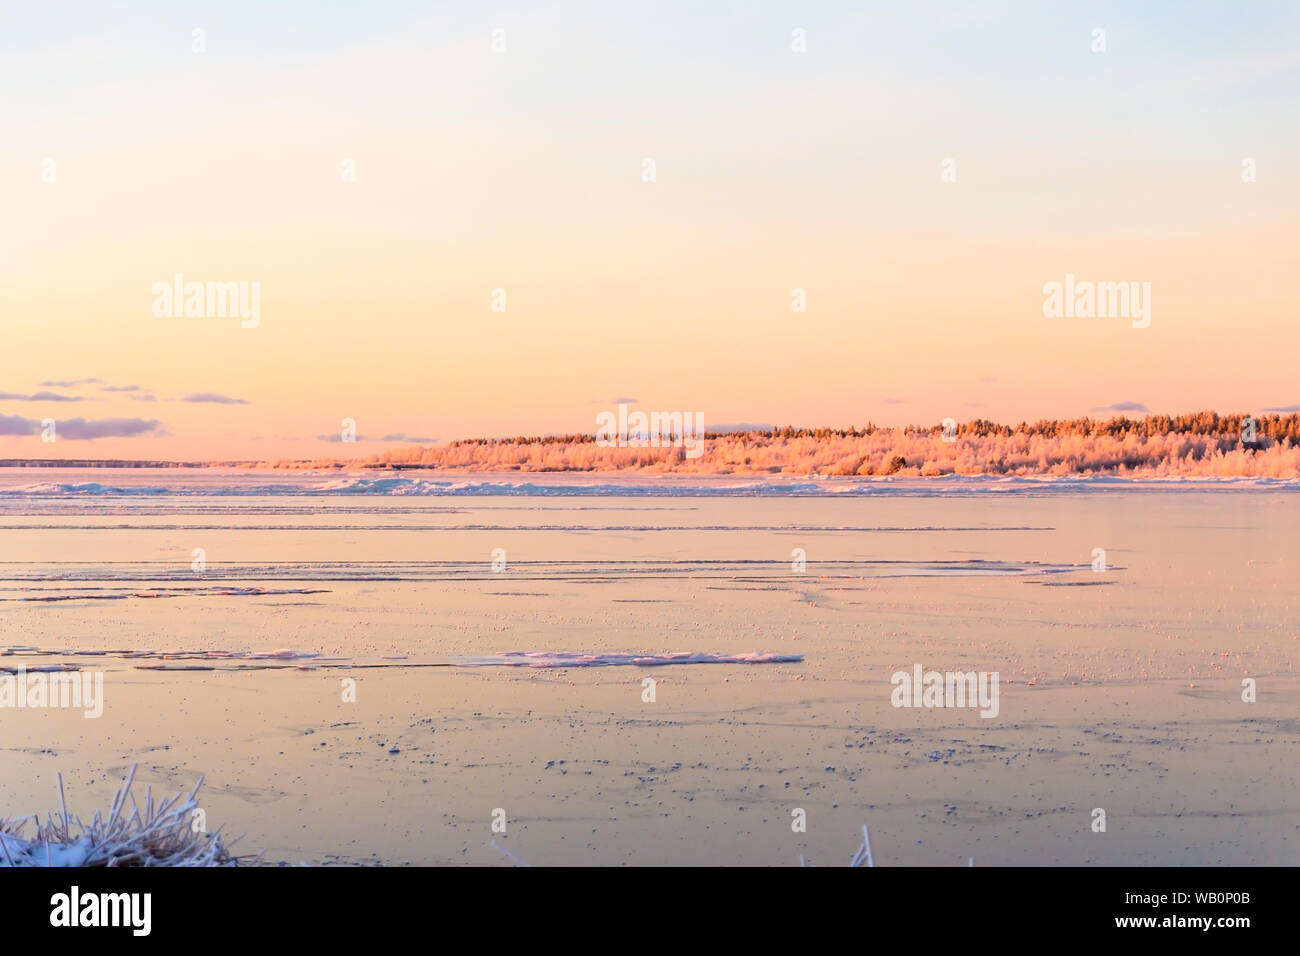 Winter See ist gefroren und frostigen Strand Landschaft, Insel Hailuoto, Bottnischen Meerbusen,Österbotten, Finnland Stockfoto